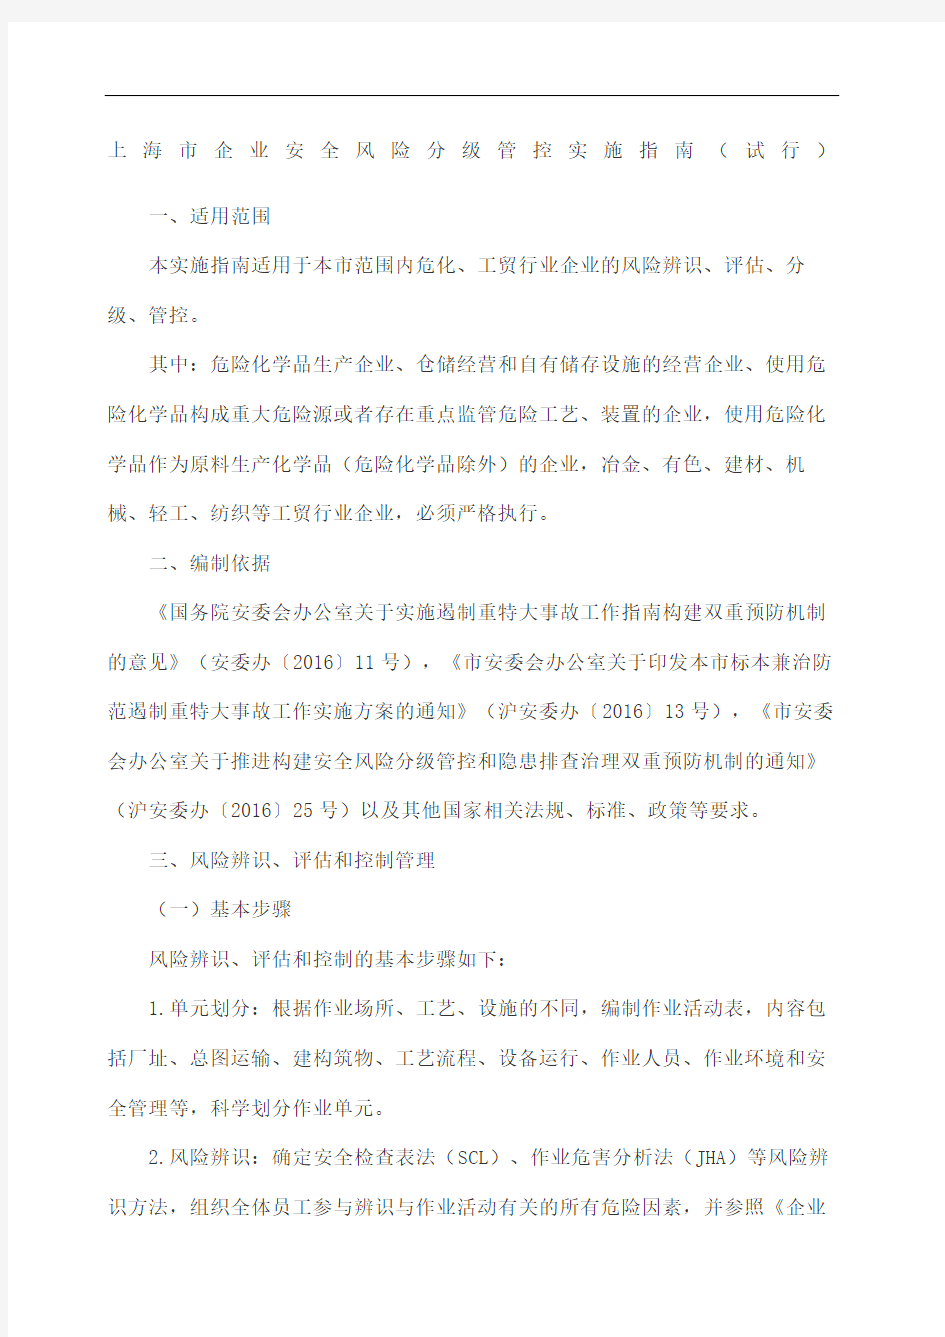 上海企业安全风险分级管控实施指南试行